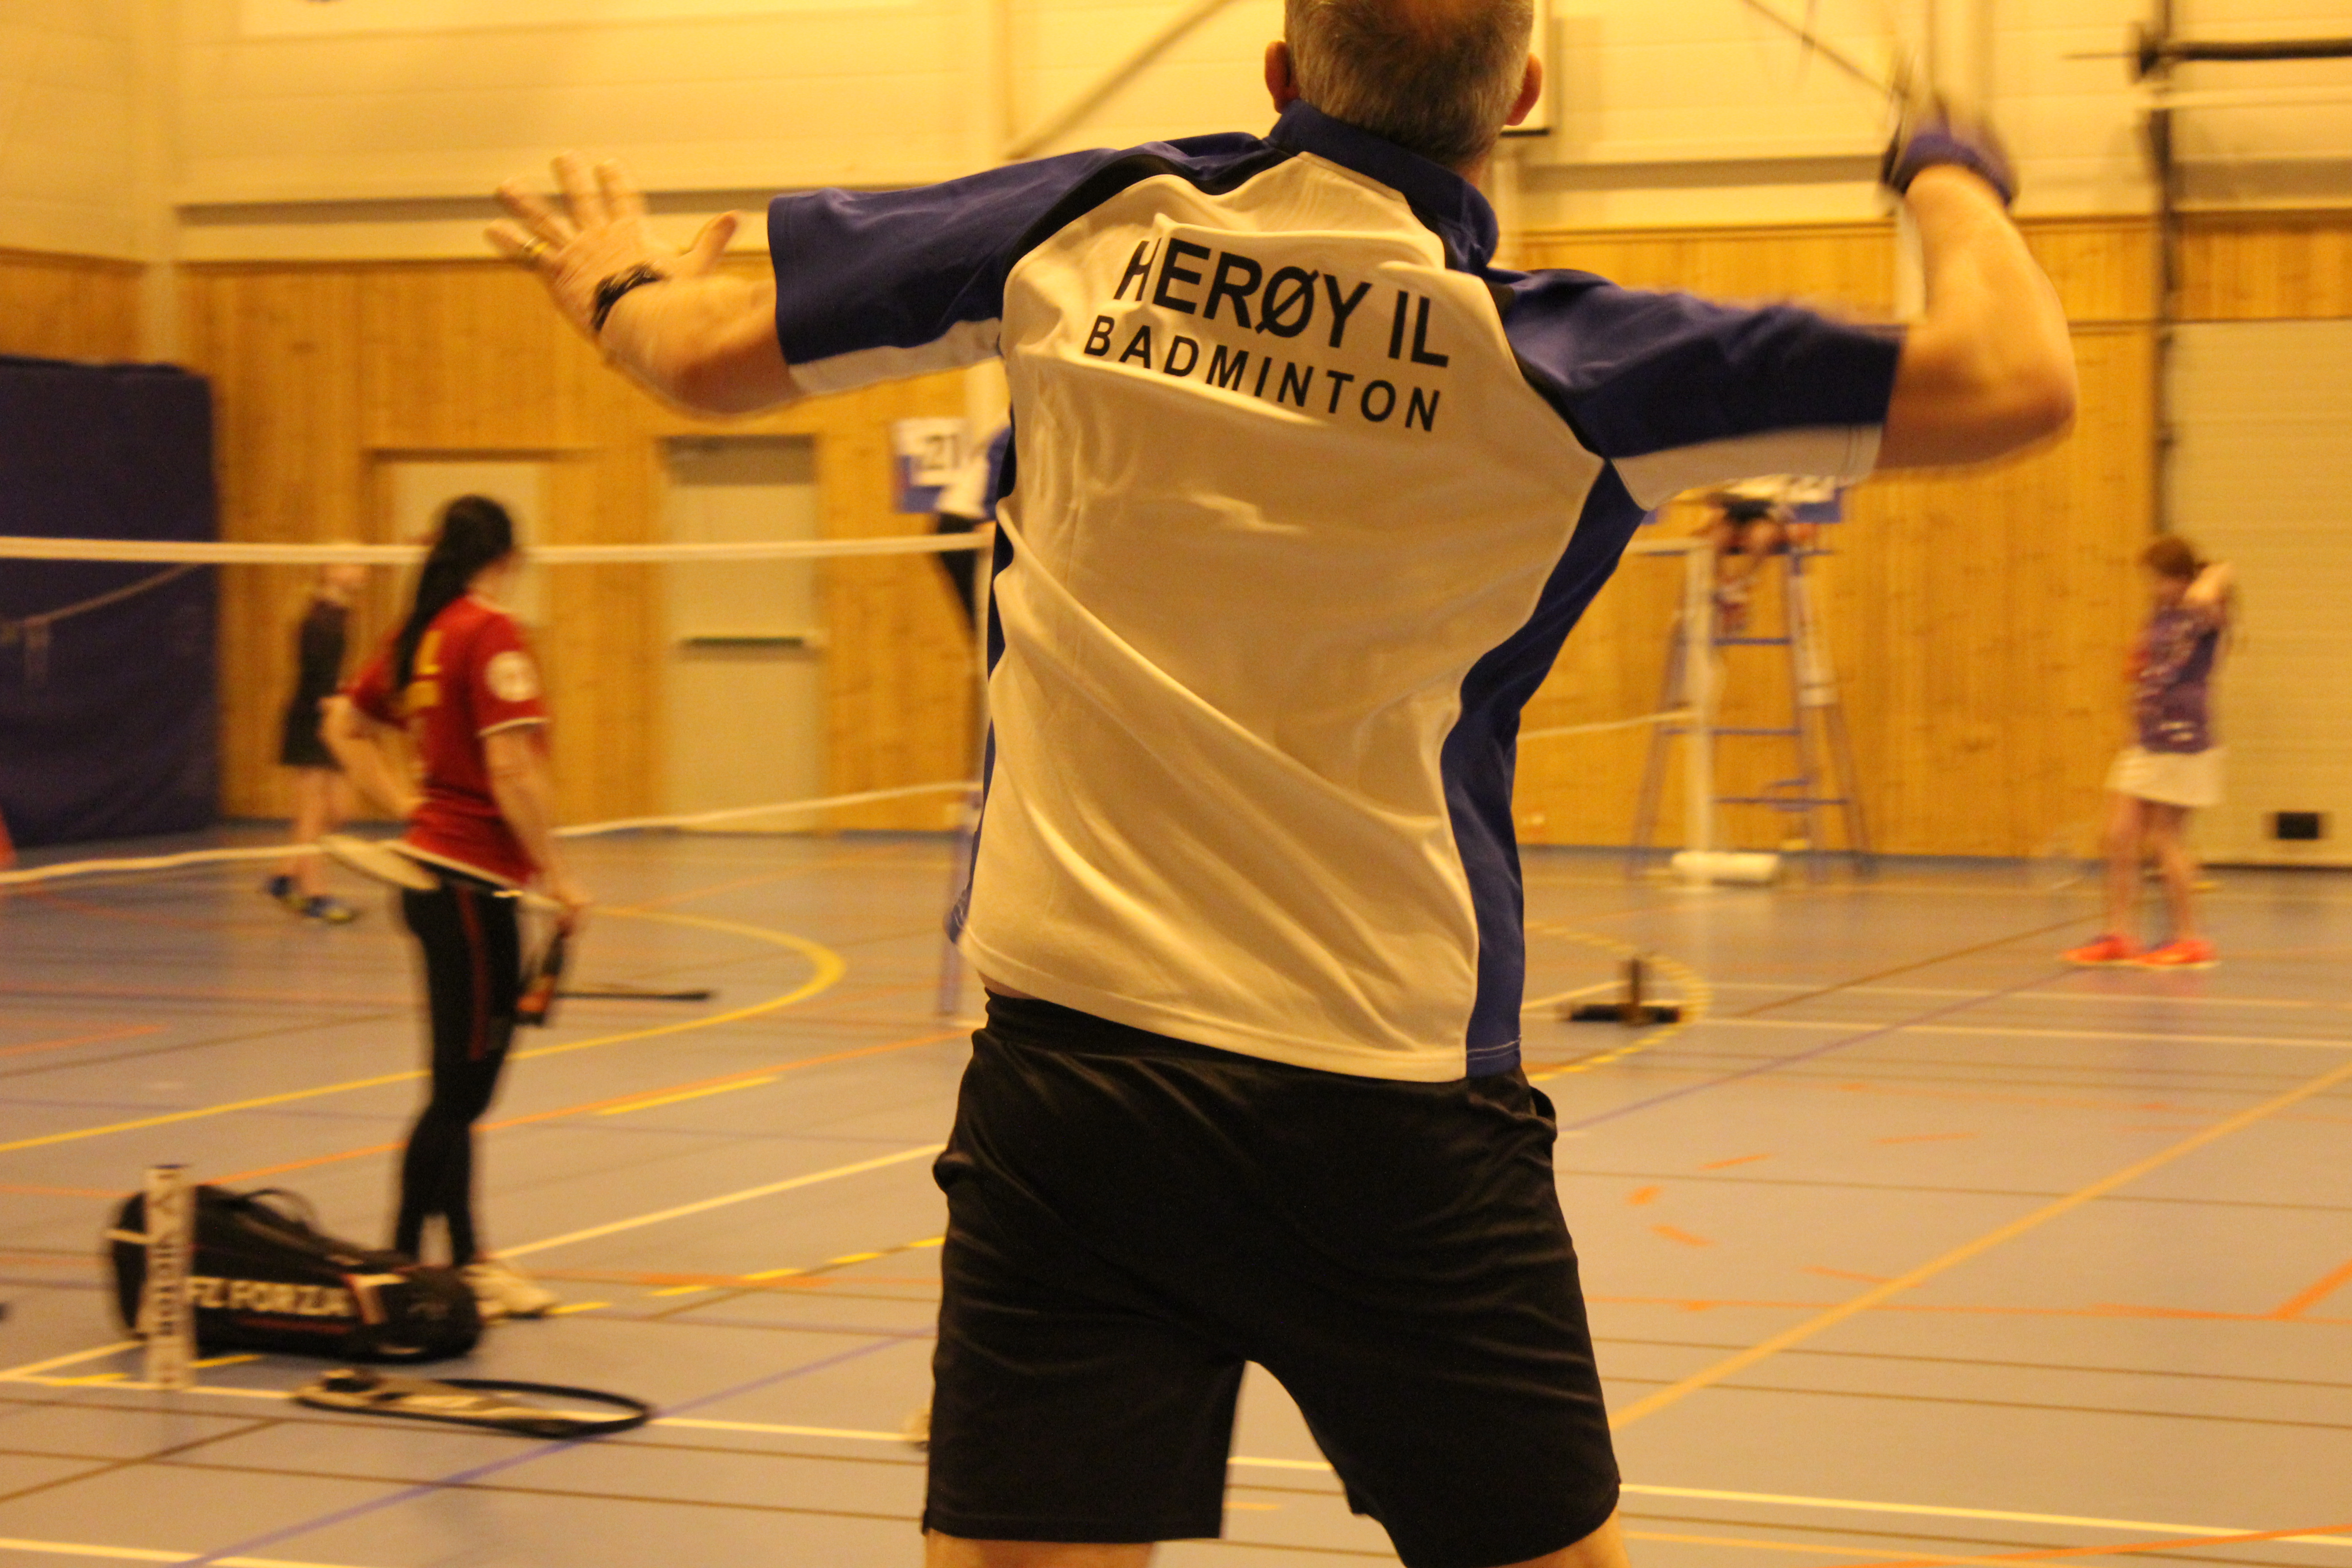 Heroy_IL_Badminton